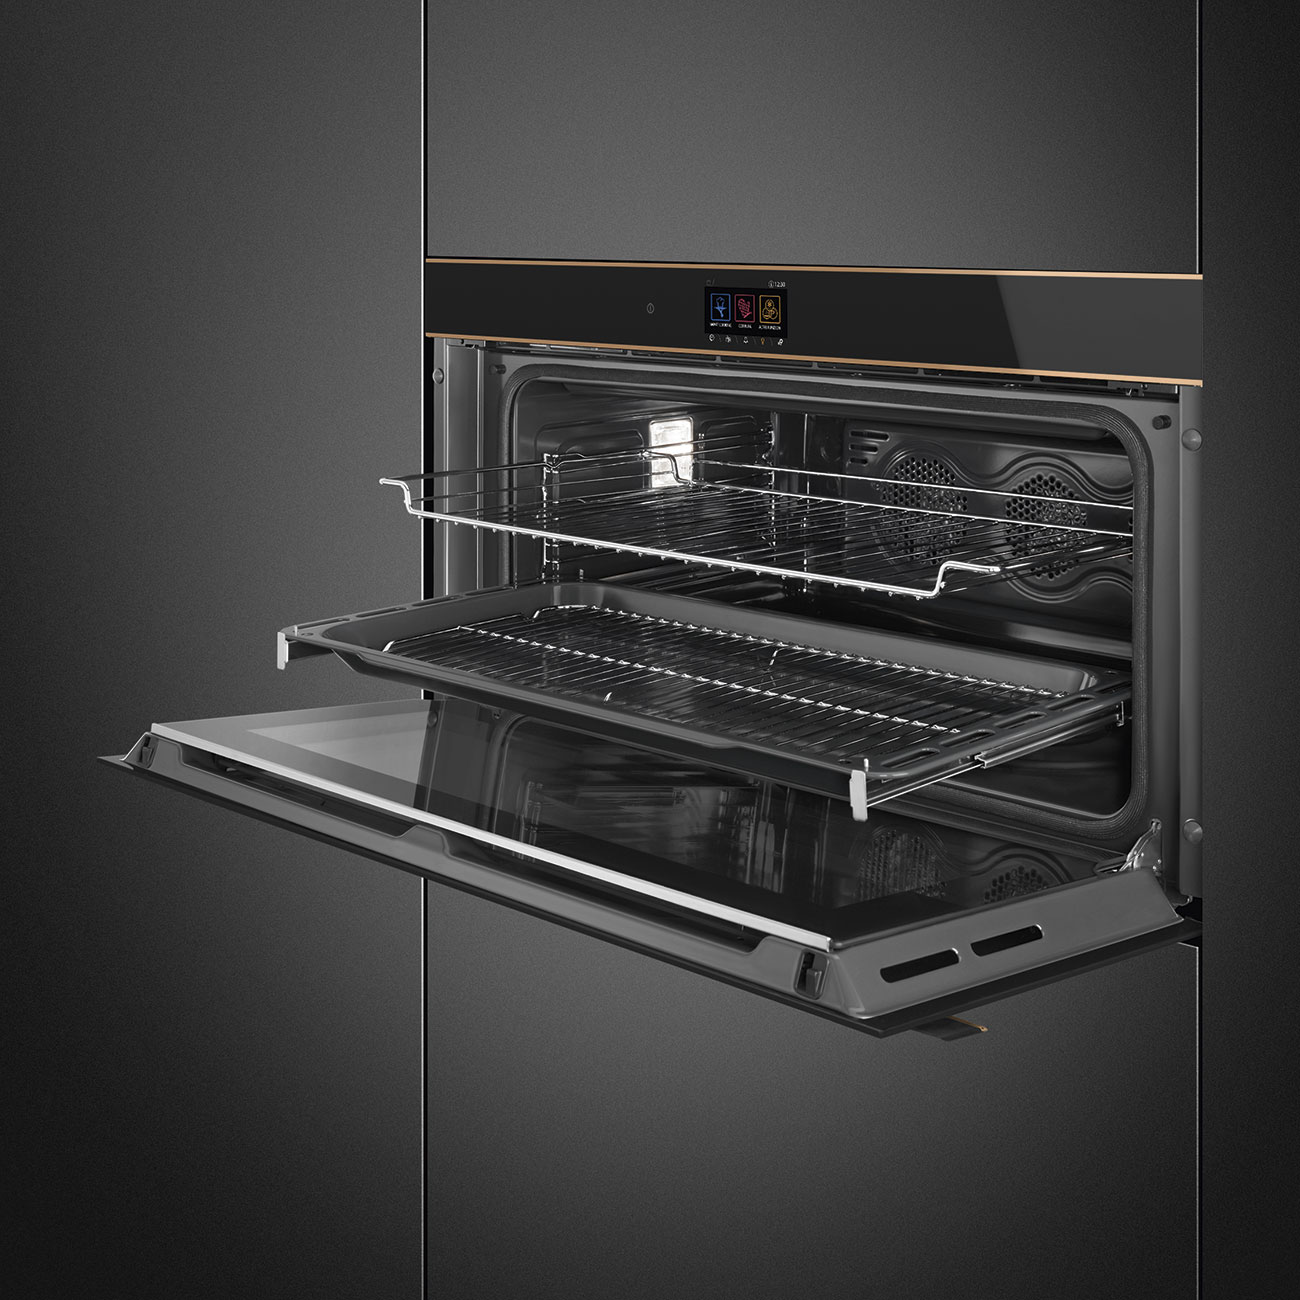 SMEG SFPR9604TNR Многофункциональный духовой шкаф с пиролизом, 90 см, черное стекло